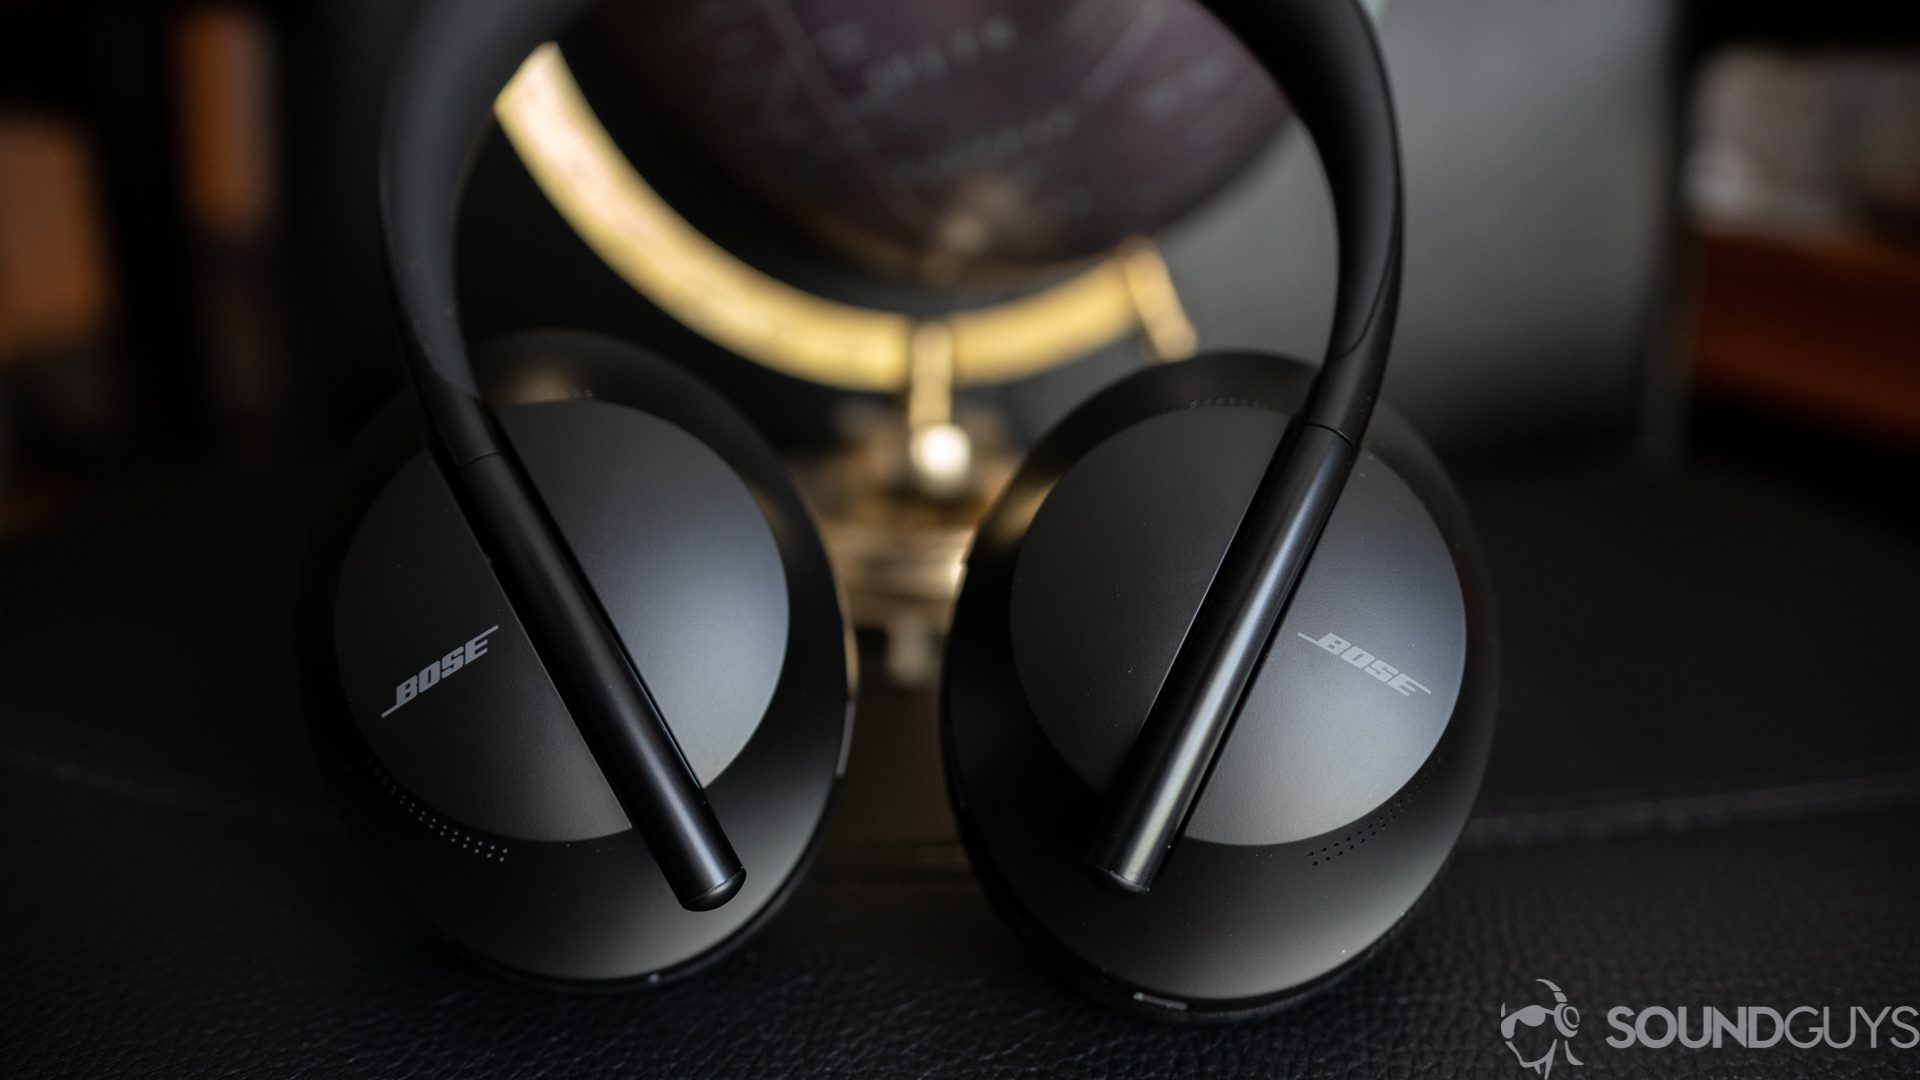 Bose NC Headphones 700 tüm zamanların en düşük fiyatı olan 259 $’a ulaştı